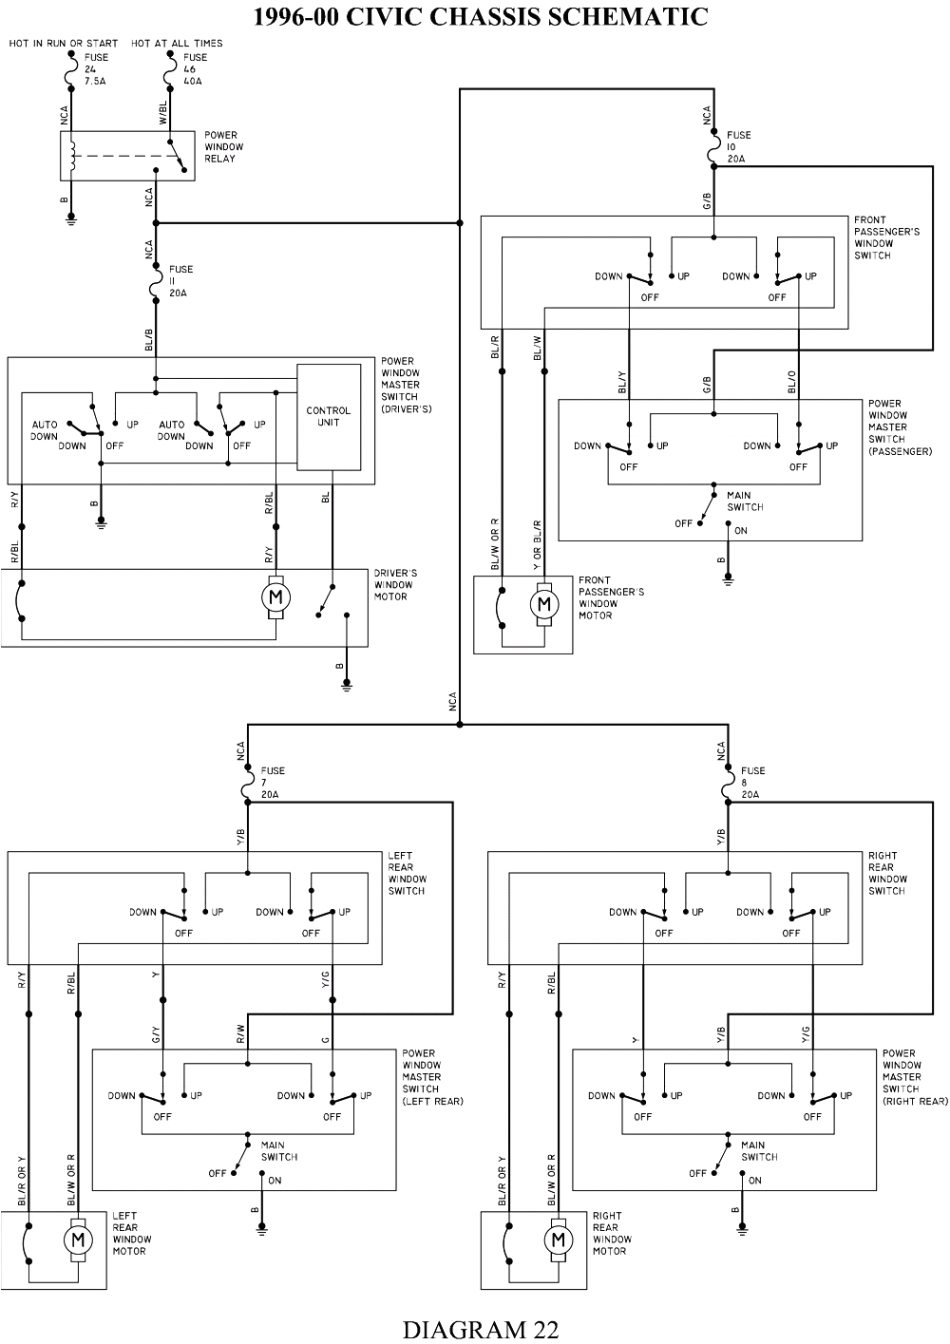 honda civic power window wiring diagrams wiring diagram blog renault megane window switch wiring diagram